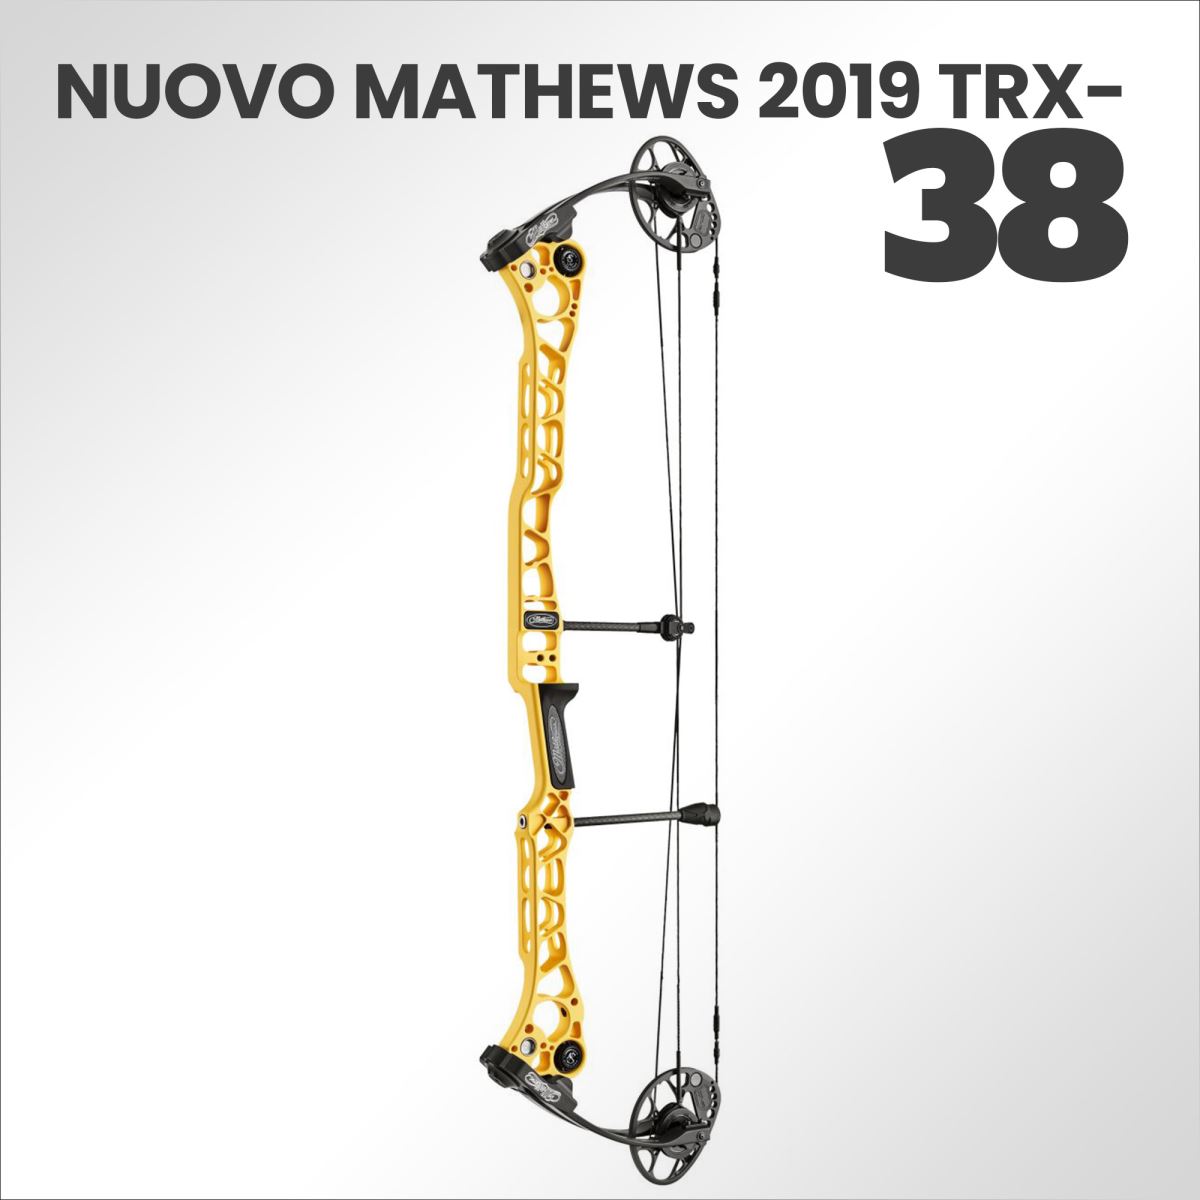 E' Arrivato il nuovo Mathews TRX-38 2019. Scoprilo in Sede!